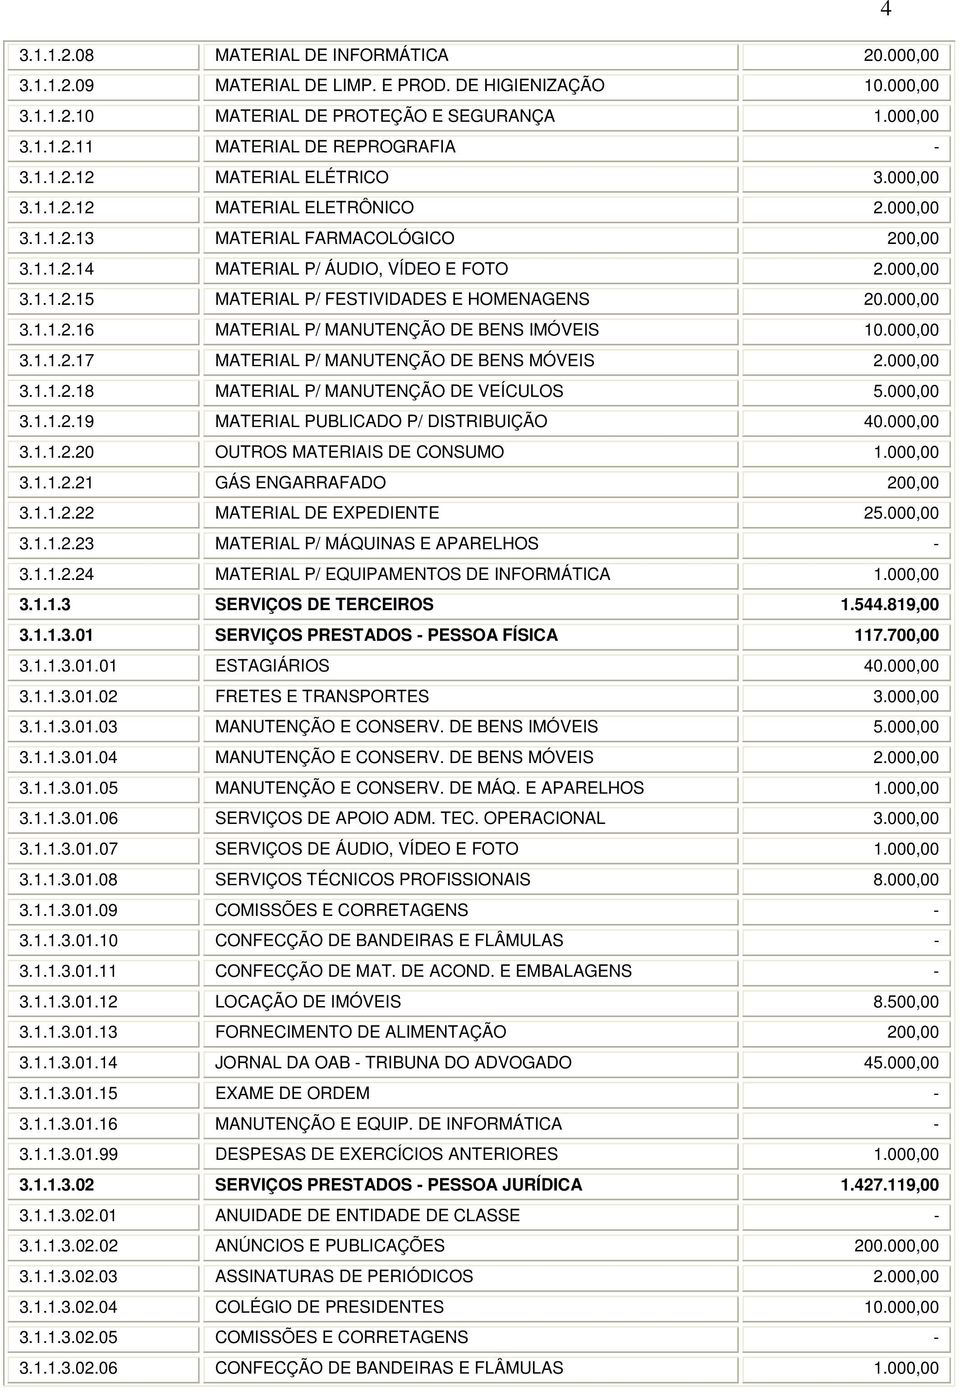 000,00 3.1.1.2.16 MATERIAL P/ MANUTENÇÃO DE BENS IMÓVEIS 10.000,00 3.1.1.2.17 MATERIAL P/ MANUTENÇÃO DE BENS MÓVEIS 2.000,00 3.1.1.2.18 MATERIAL P/ MANUTENÇÃO DE VEÍCULOS 5.000,00 3.1.1.2.19 MATERIAL PUBLICADO P/ DISTRIBUIÇÃO 40.